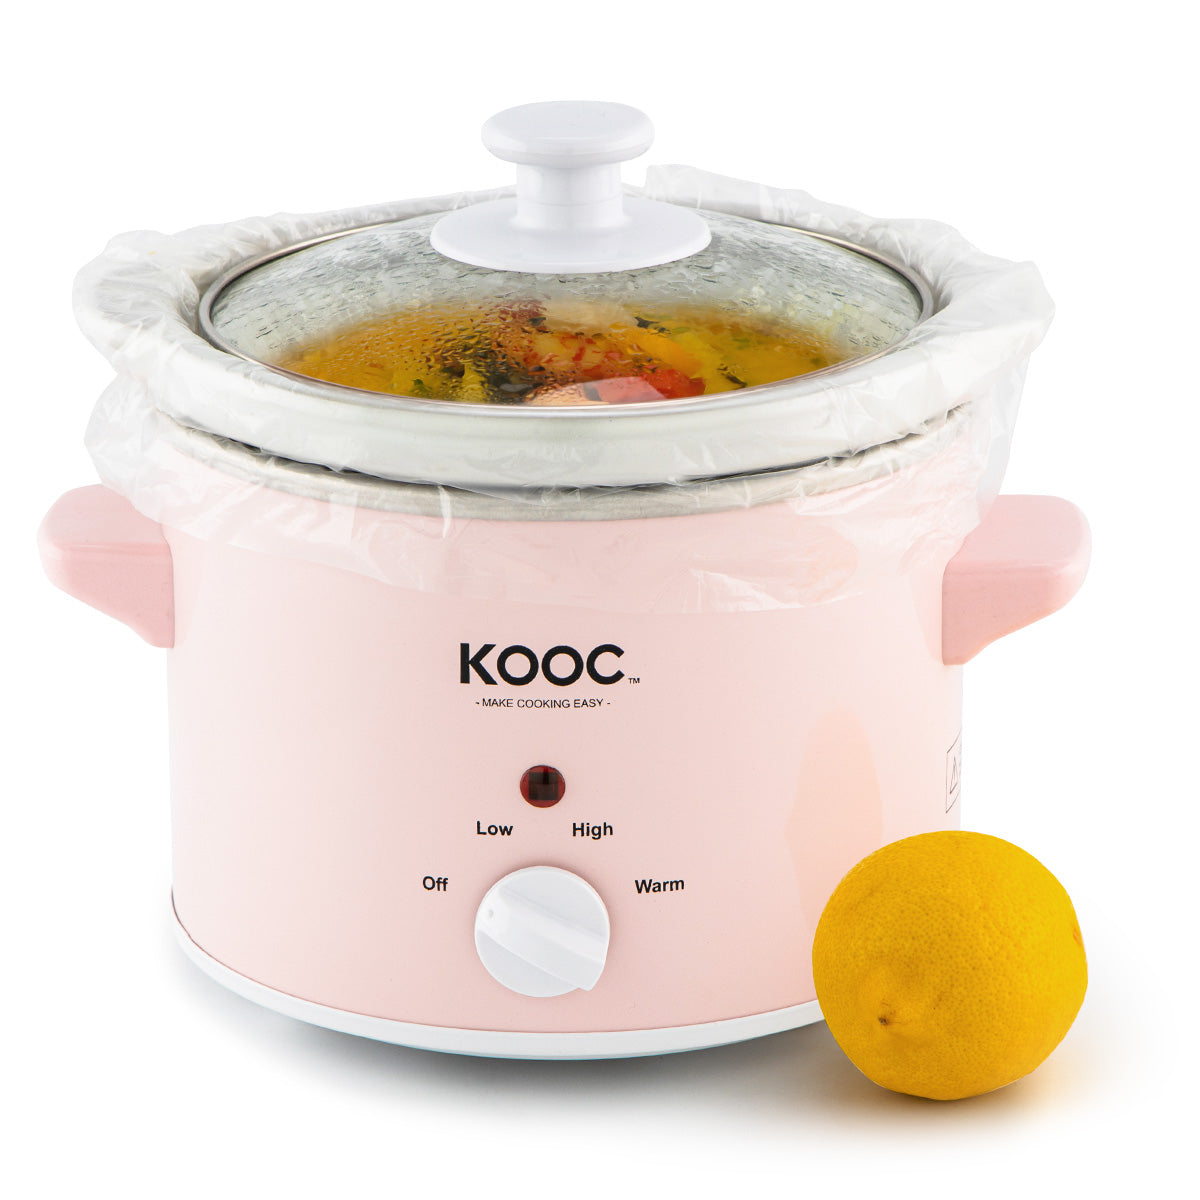 Crock Pot Slow Cooker, Classic, 4.5 Quart, Appliances